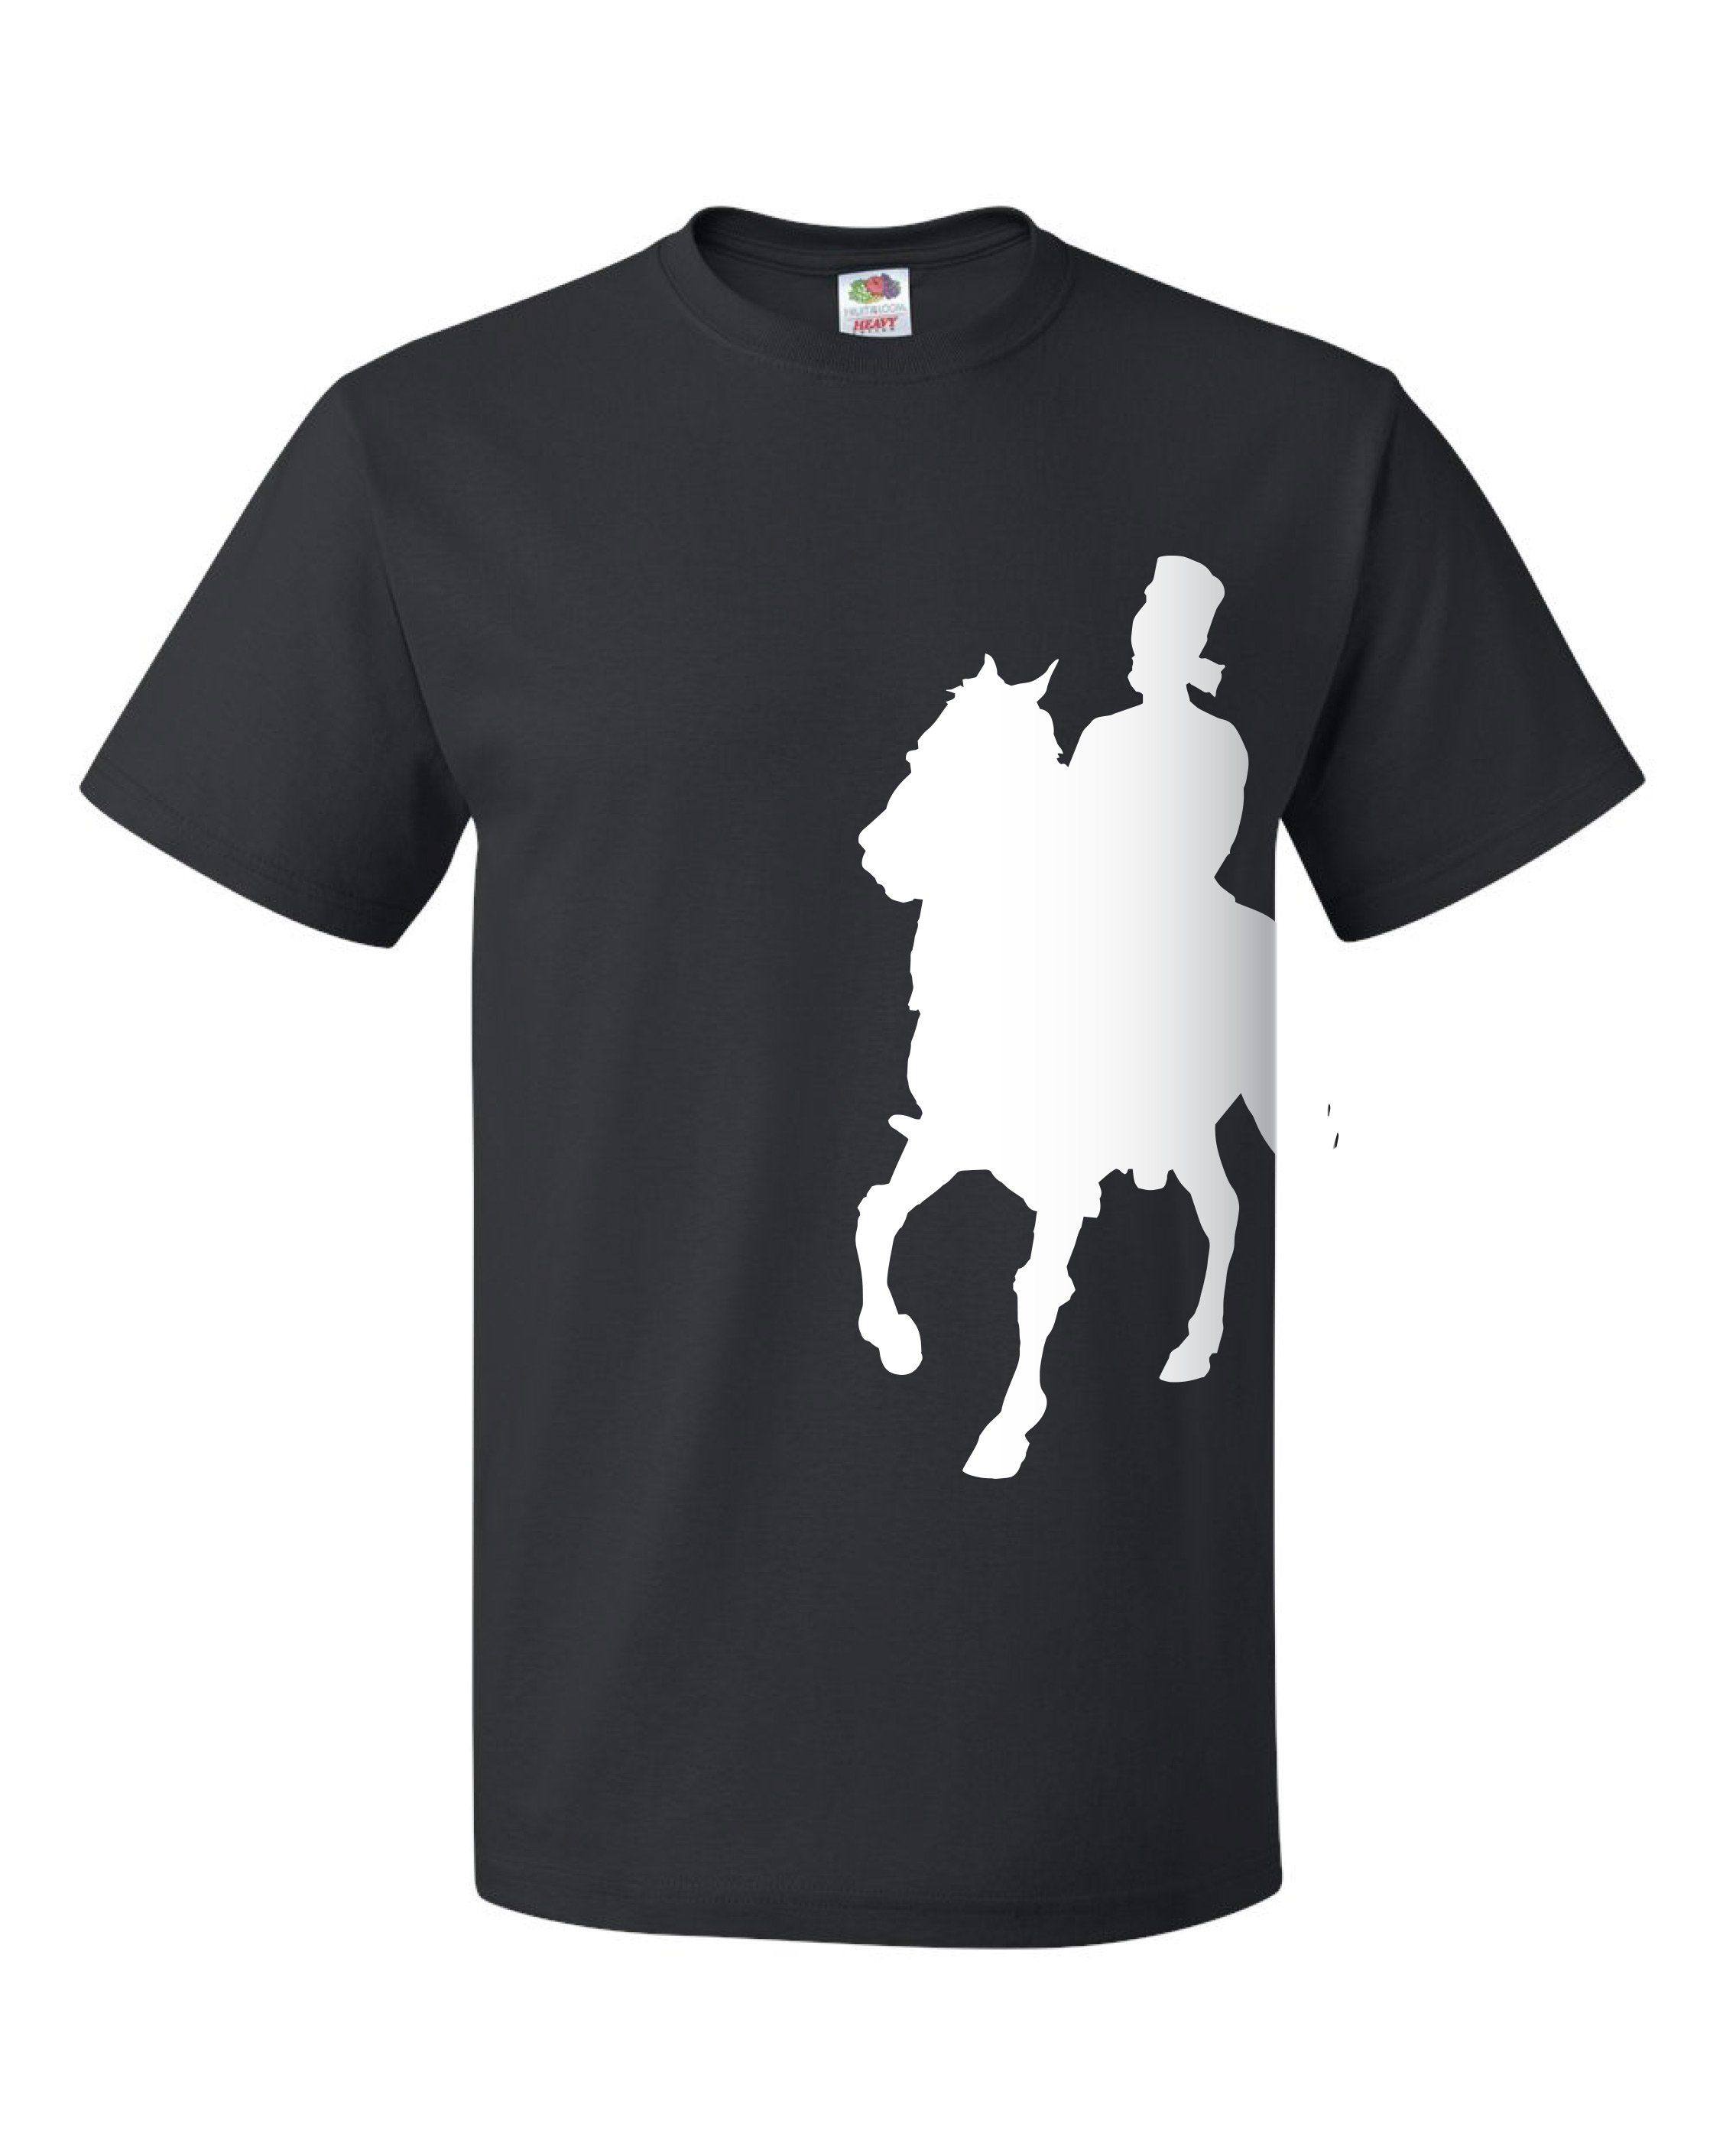 UN_Horse-SidePrint_T-Shirts.jpg